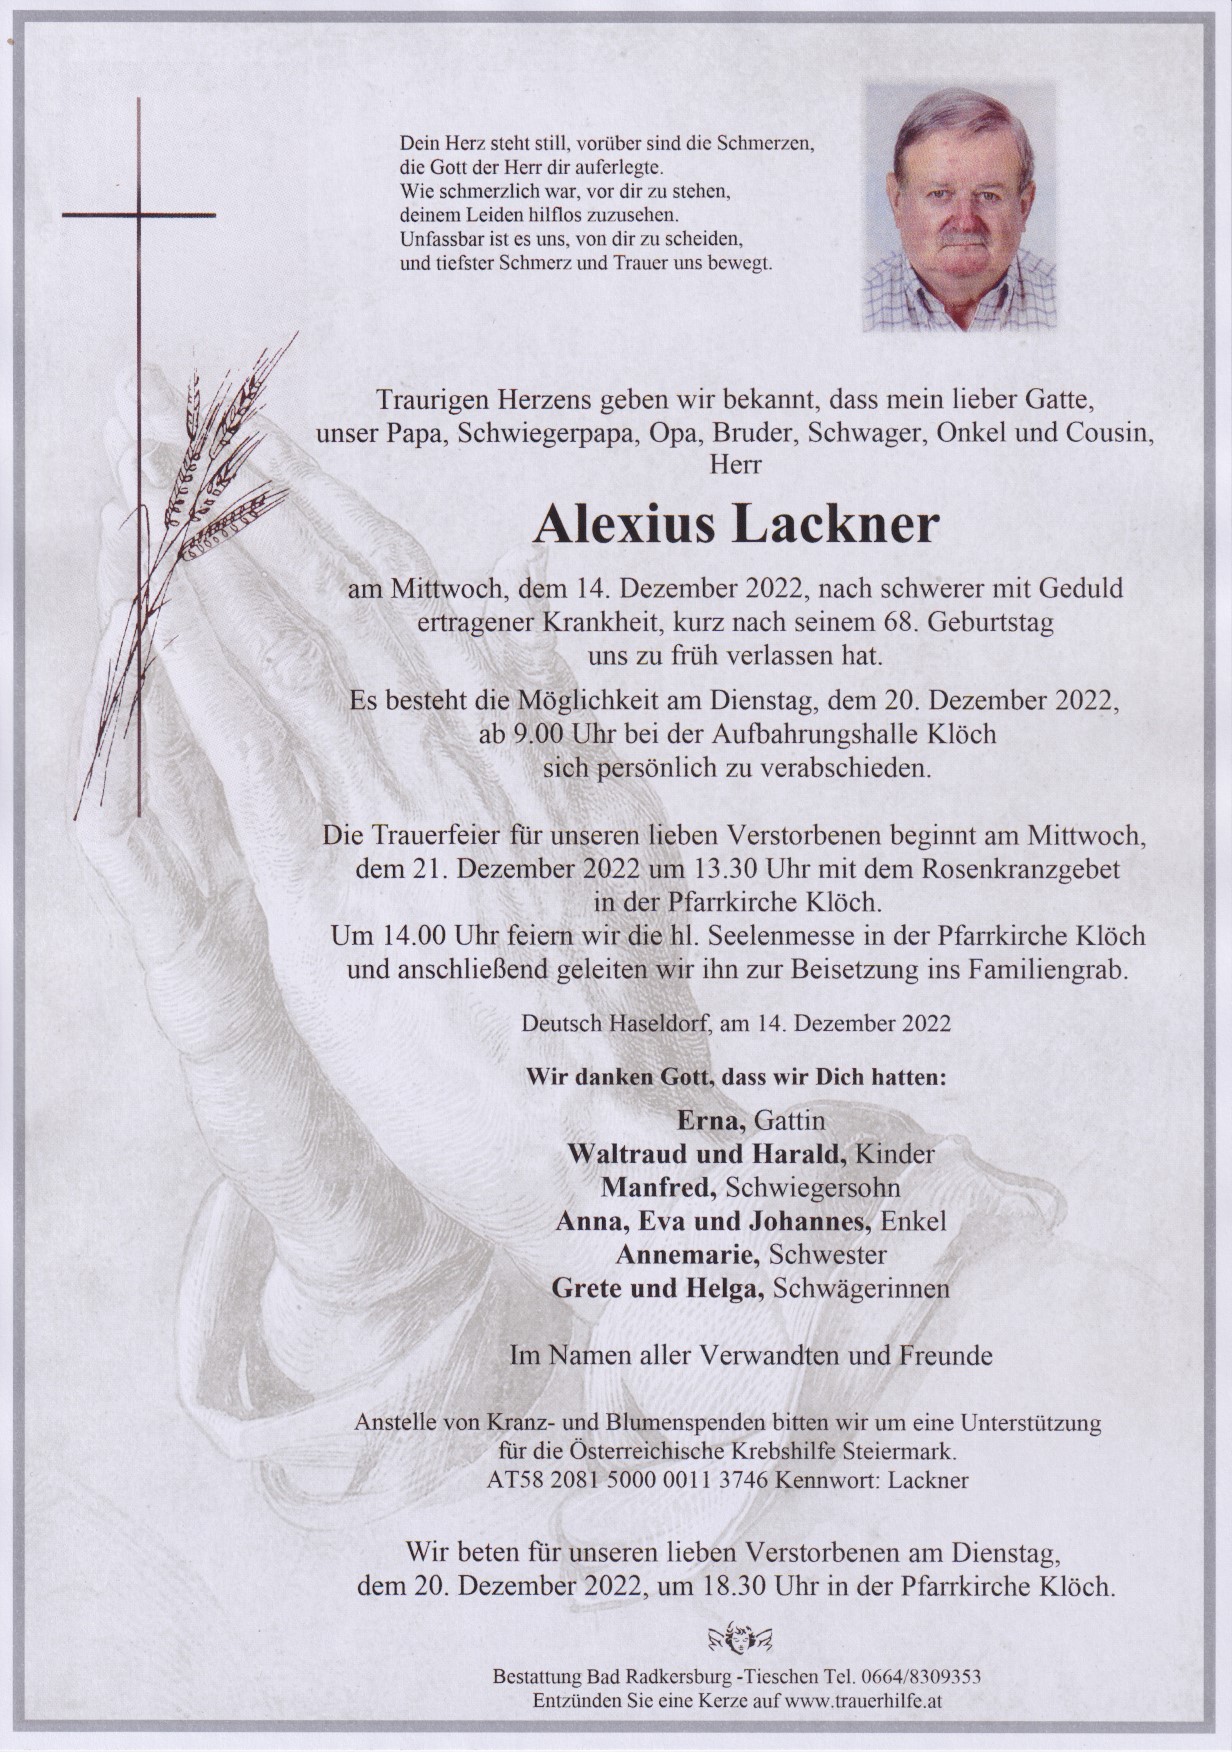 Alexius Lackner